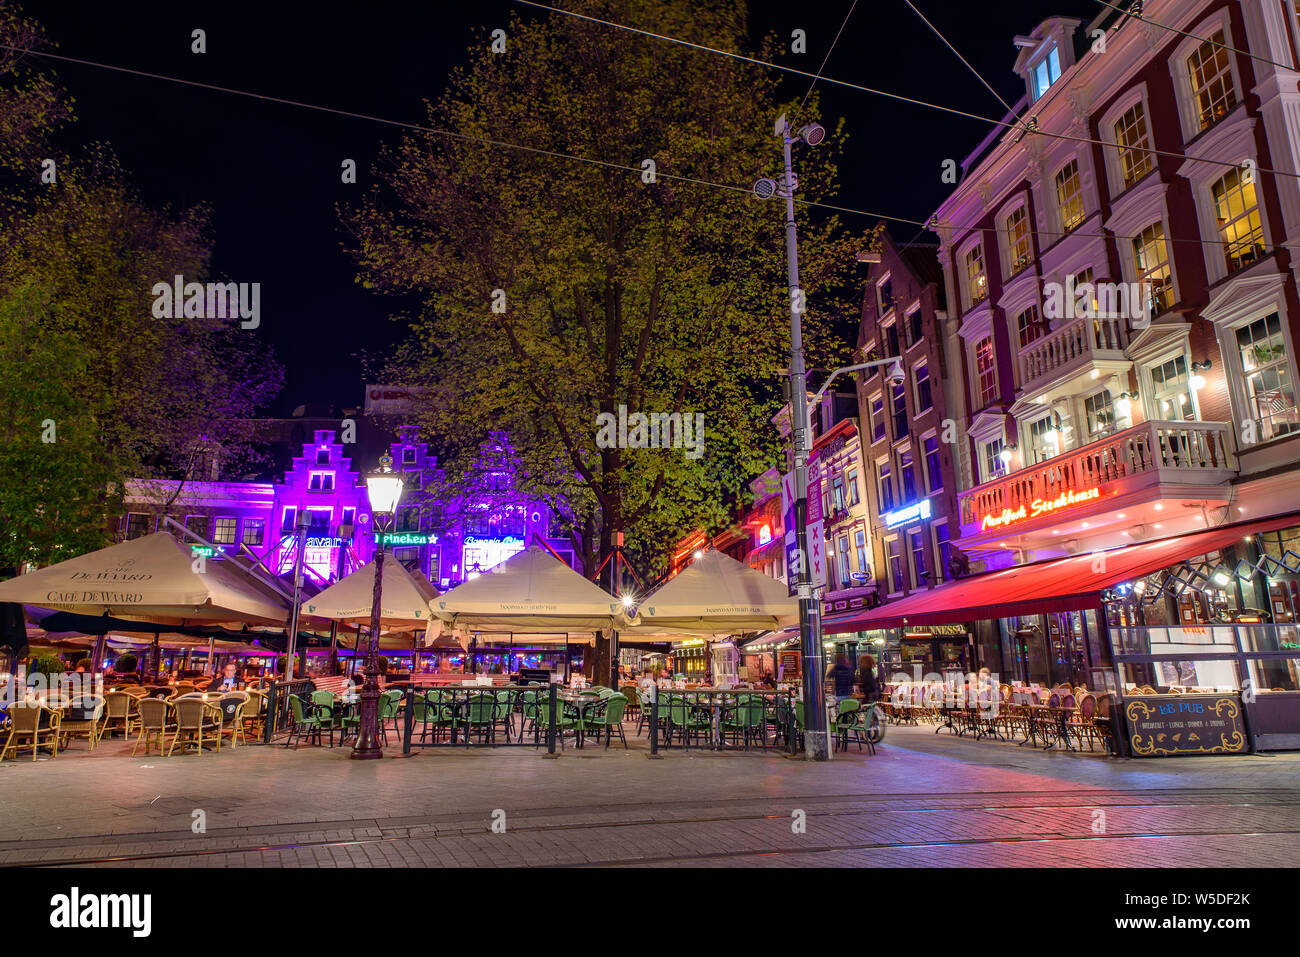 Vue nocturne de la place Rembrandtplein d'Amsterdam, Pays-Bas Banque D'Images